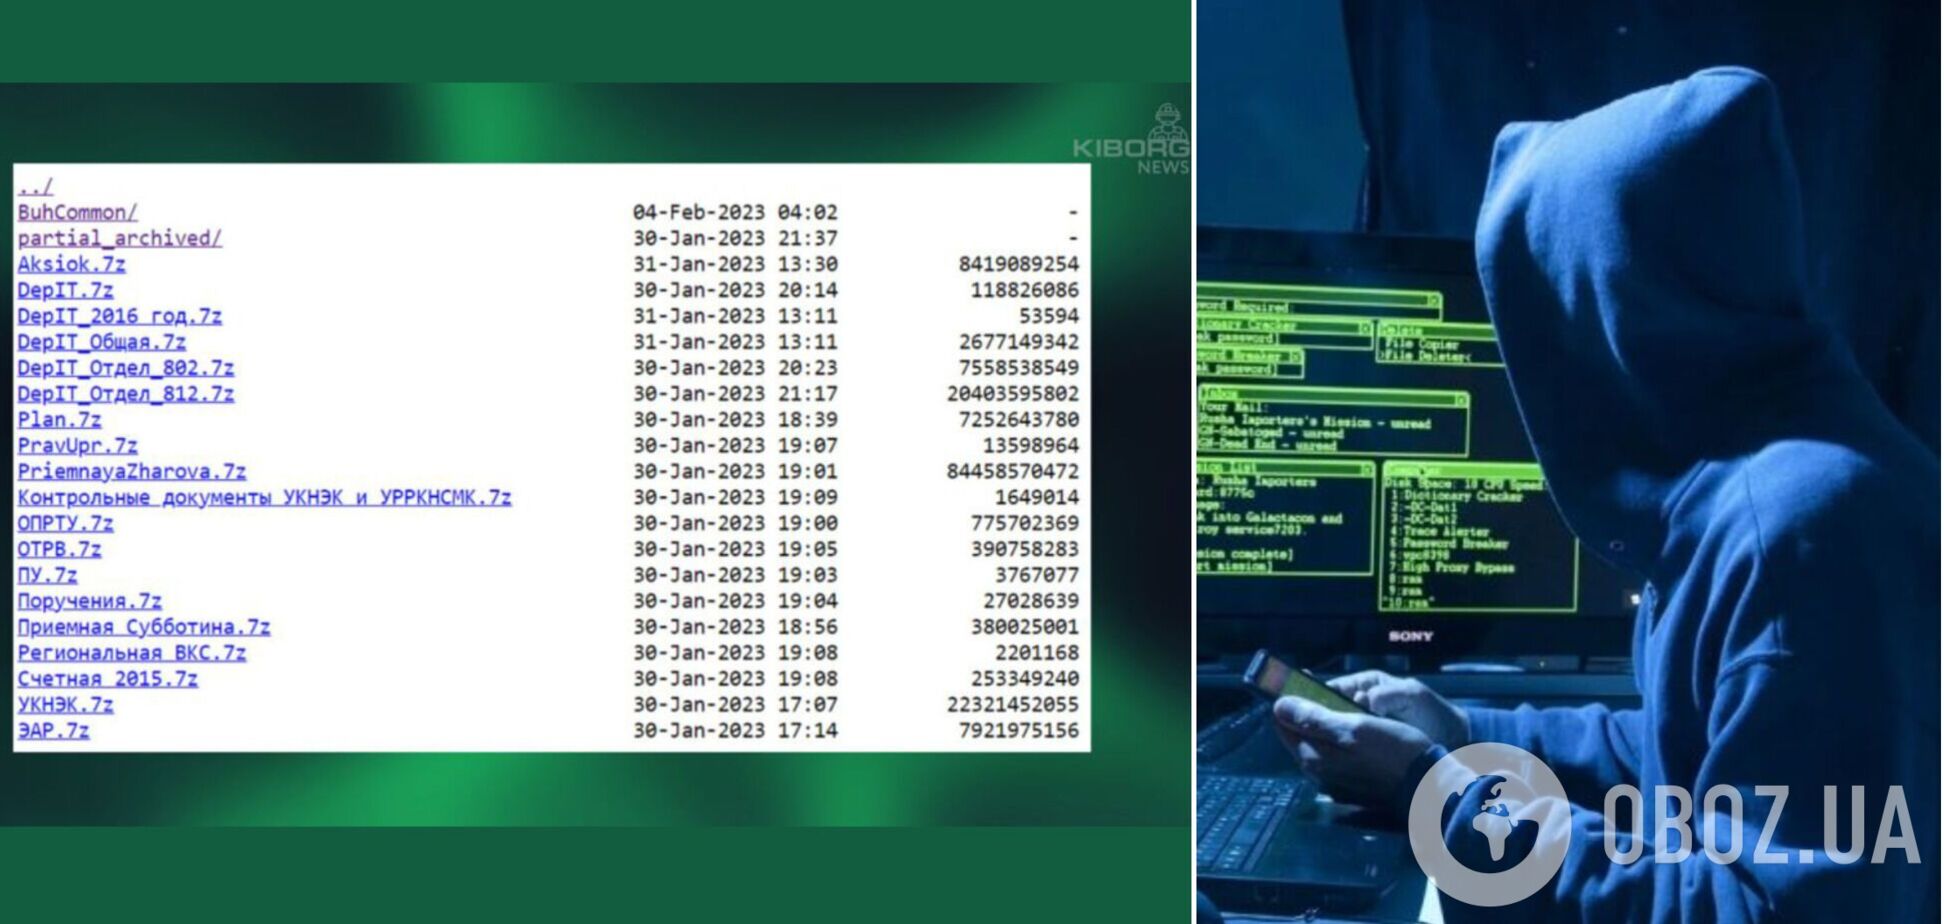 Украинские хакеры похитили данные у путинских цензоров из 'Роскомнадзора': получено 500 гб материалов